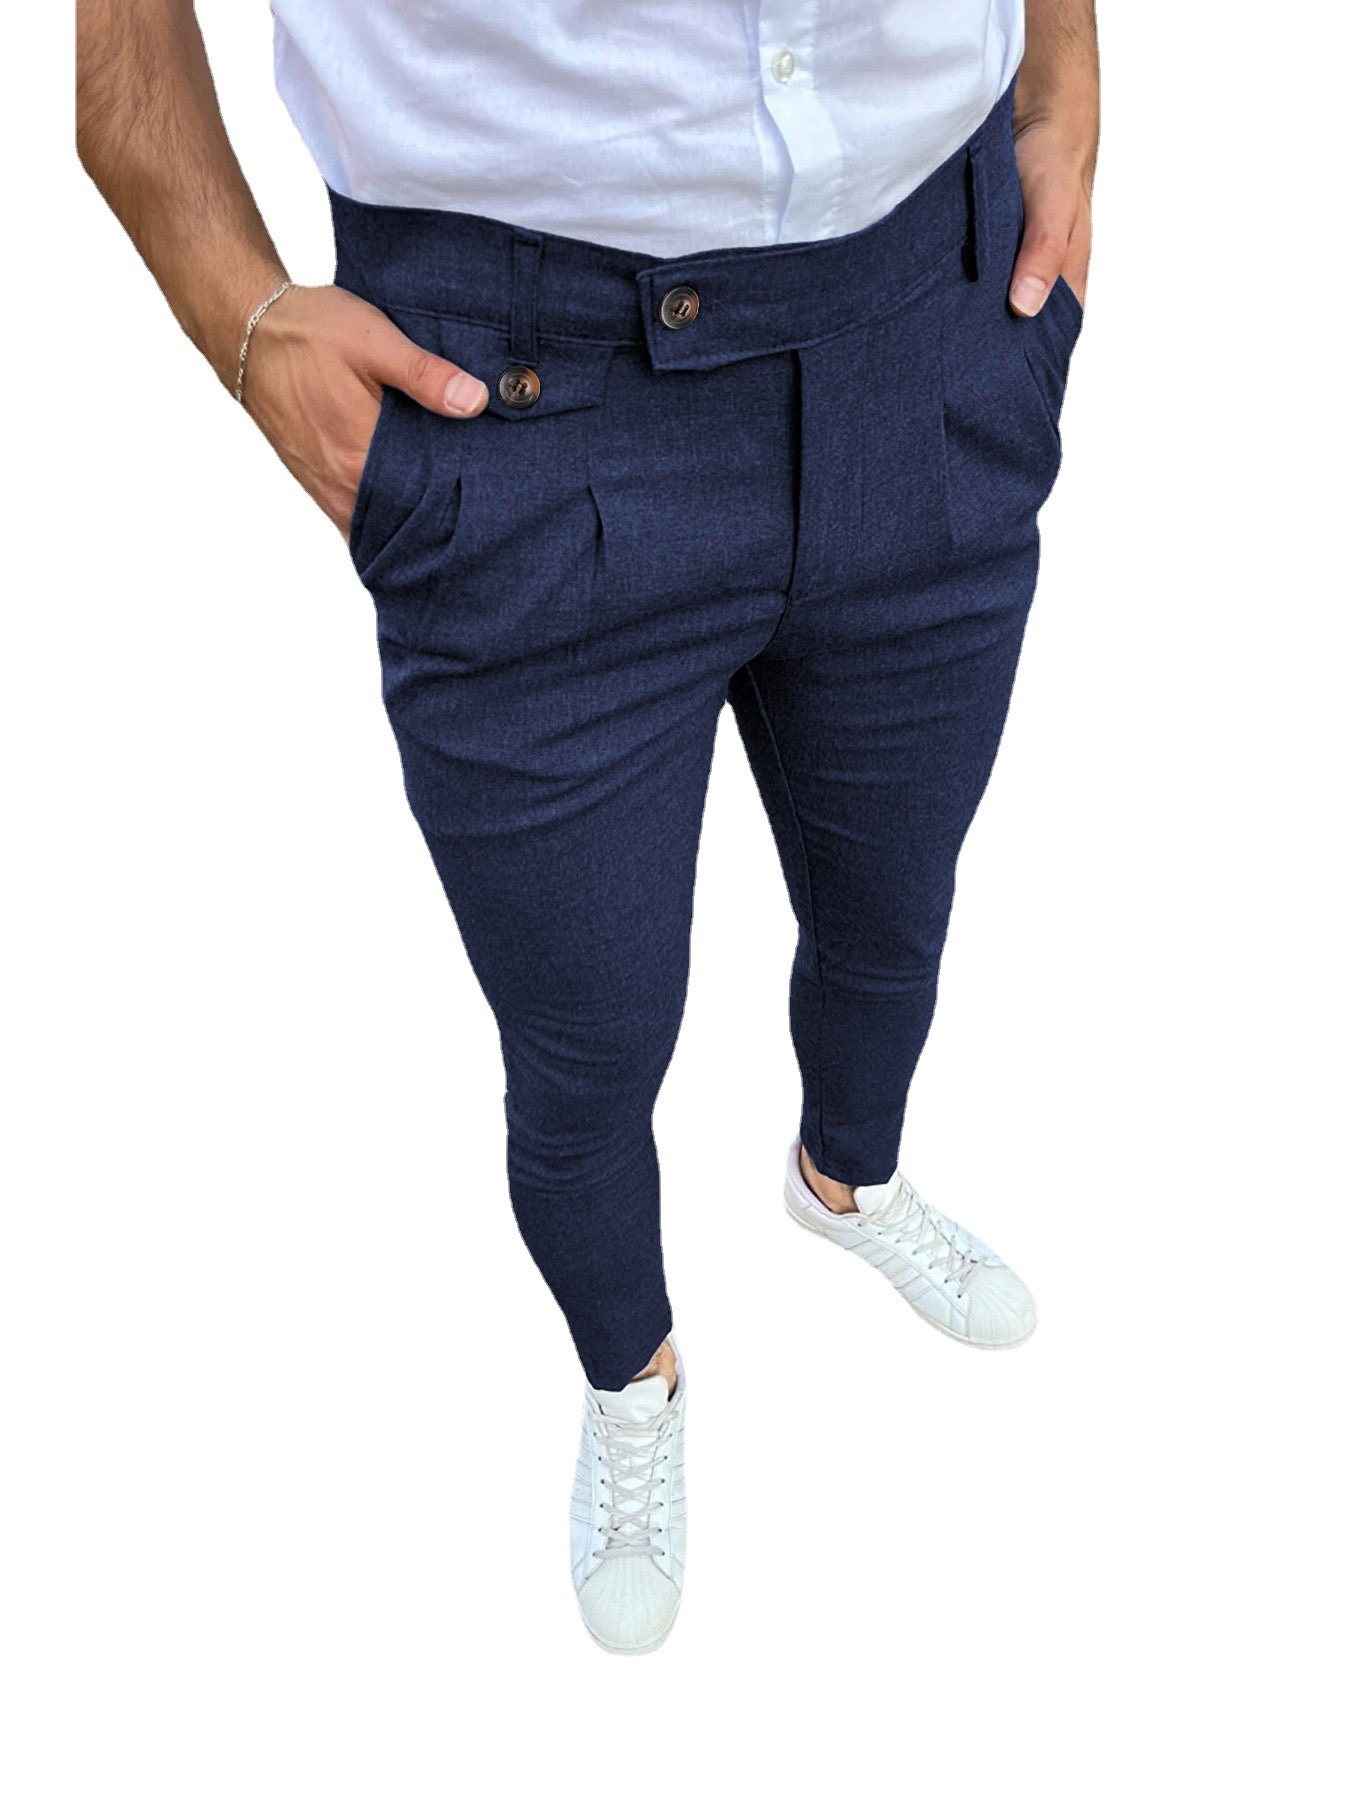 Pantalones chinos ajustados para hombre, parte delantera plana, elásticos,  ajustados, de vestir, cómodos, casuales, lisos